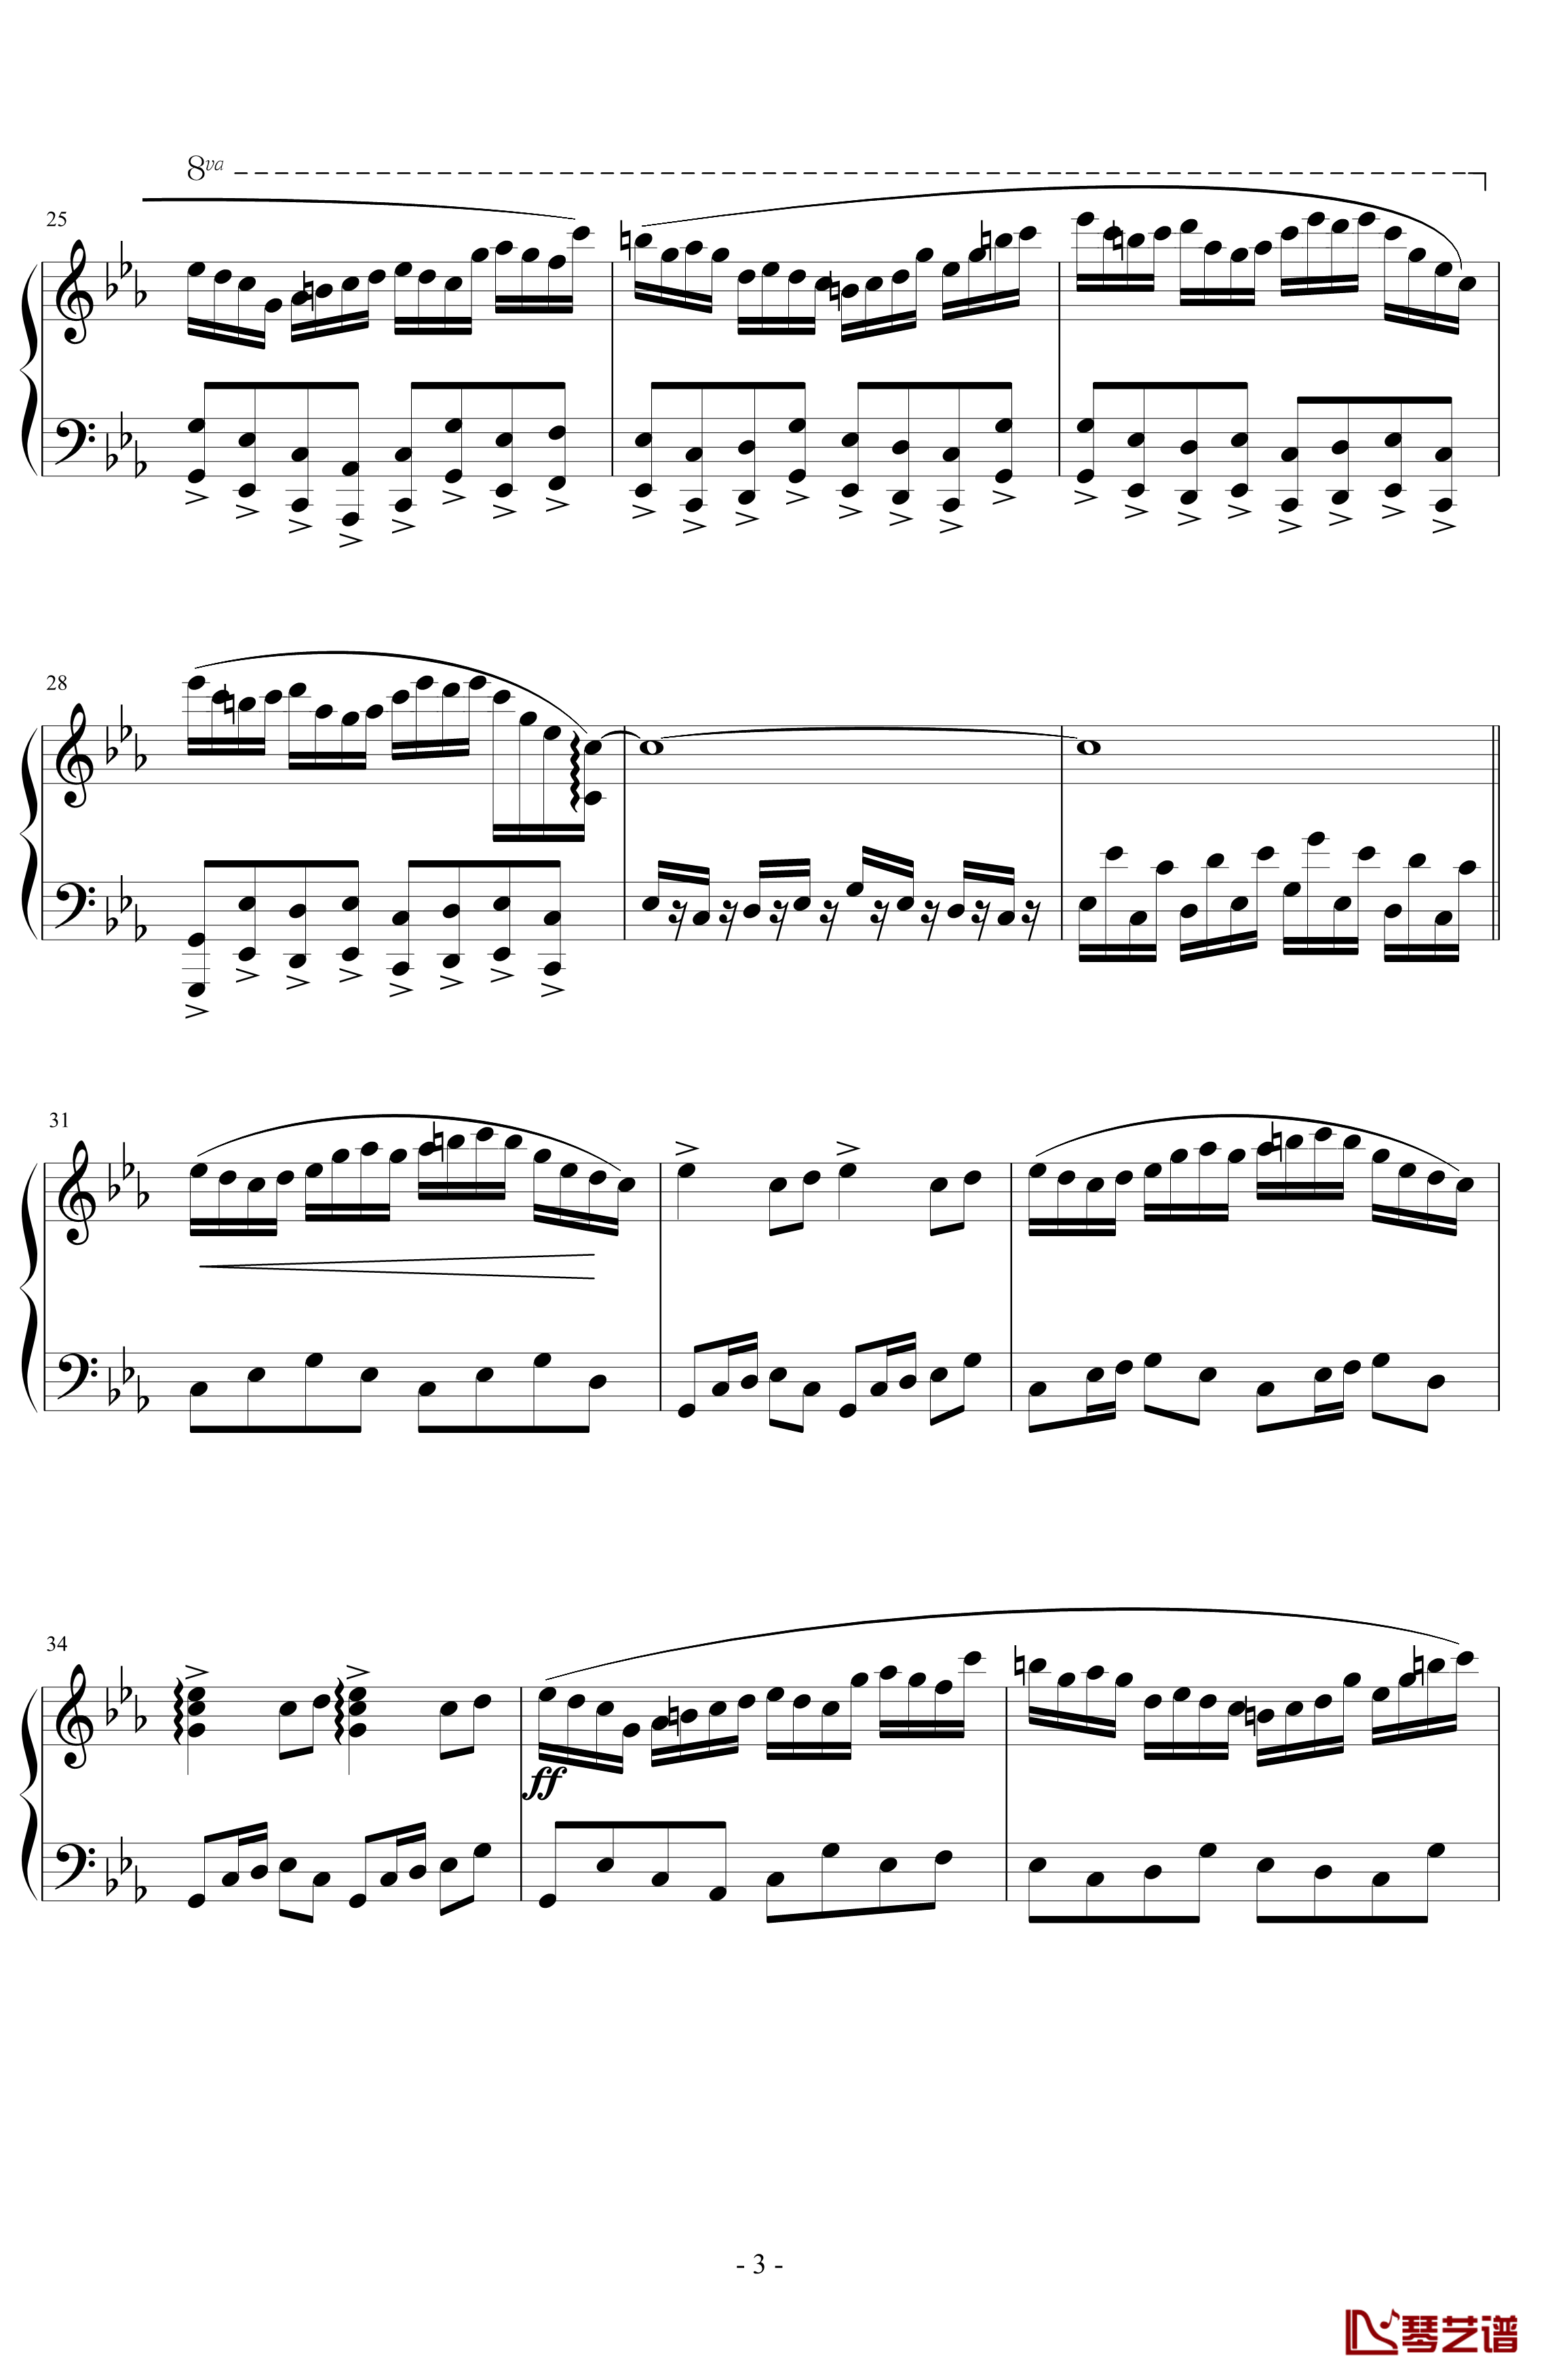 文武贝vs贝多芬钢琴谱-瞎闹版-蕾诺丝3